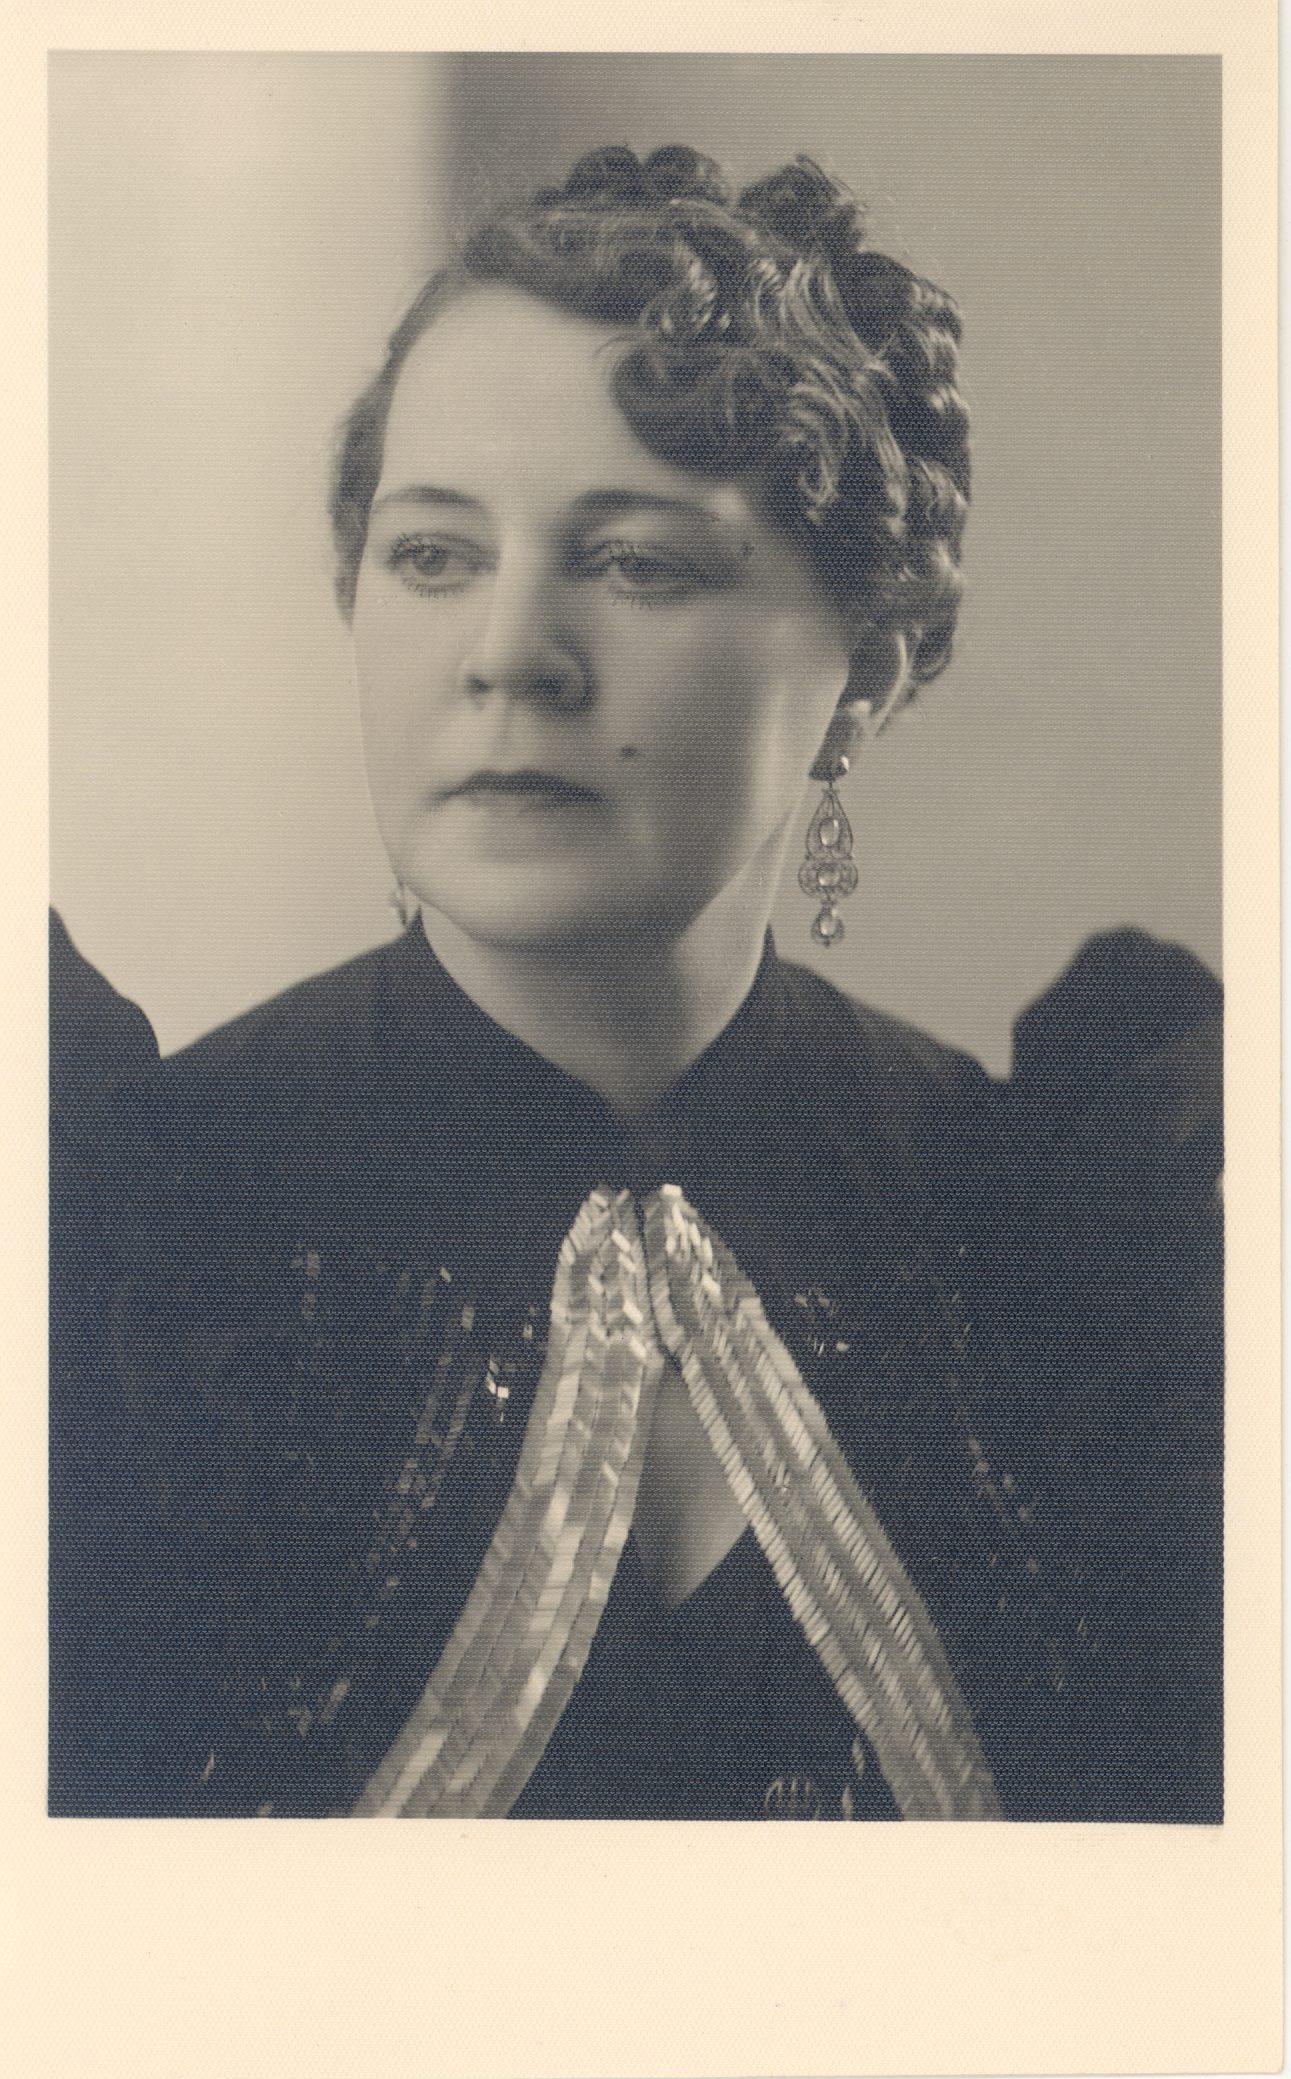 Bornhöhe, Eduard sister's daughter Olga Mikk-Kull